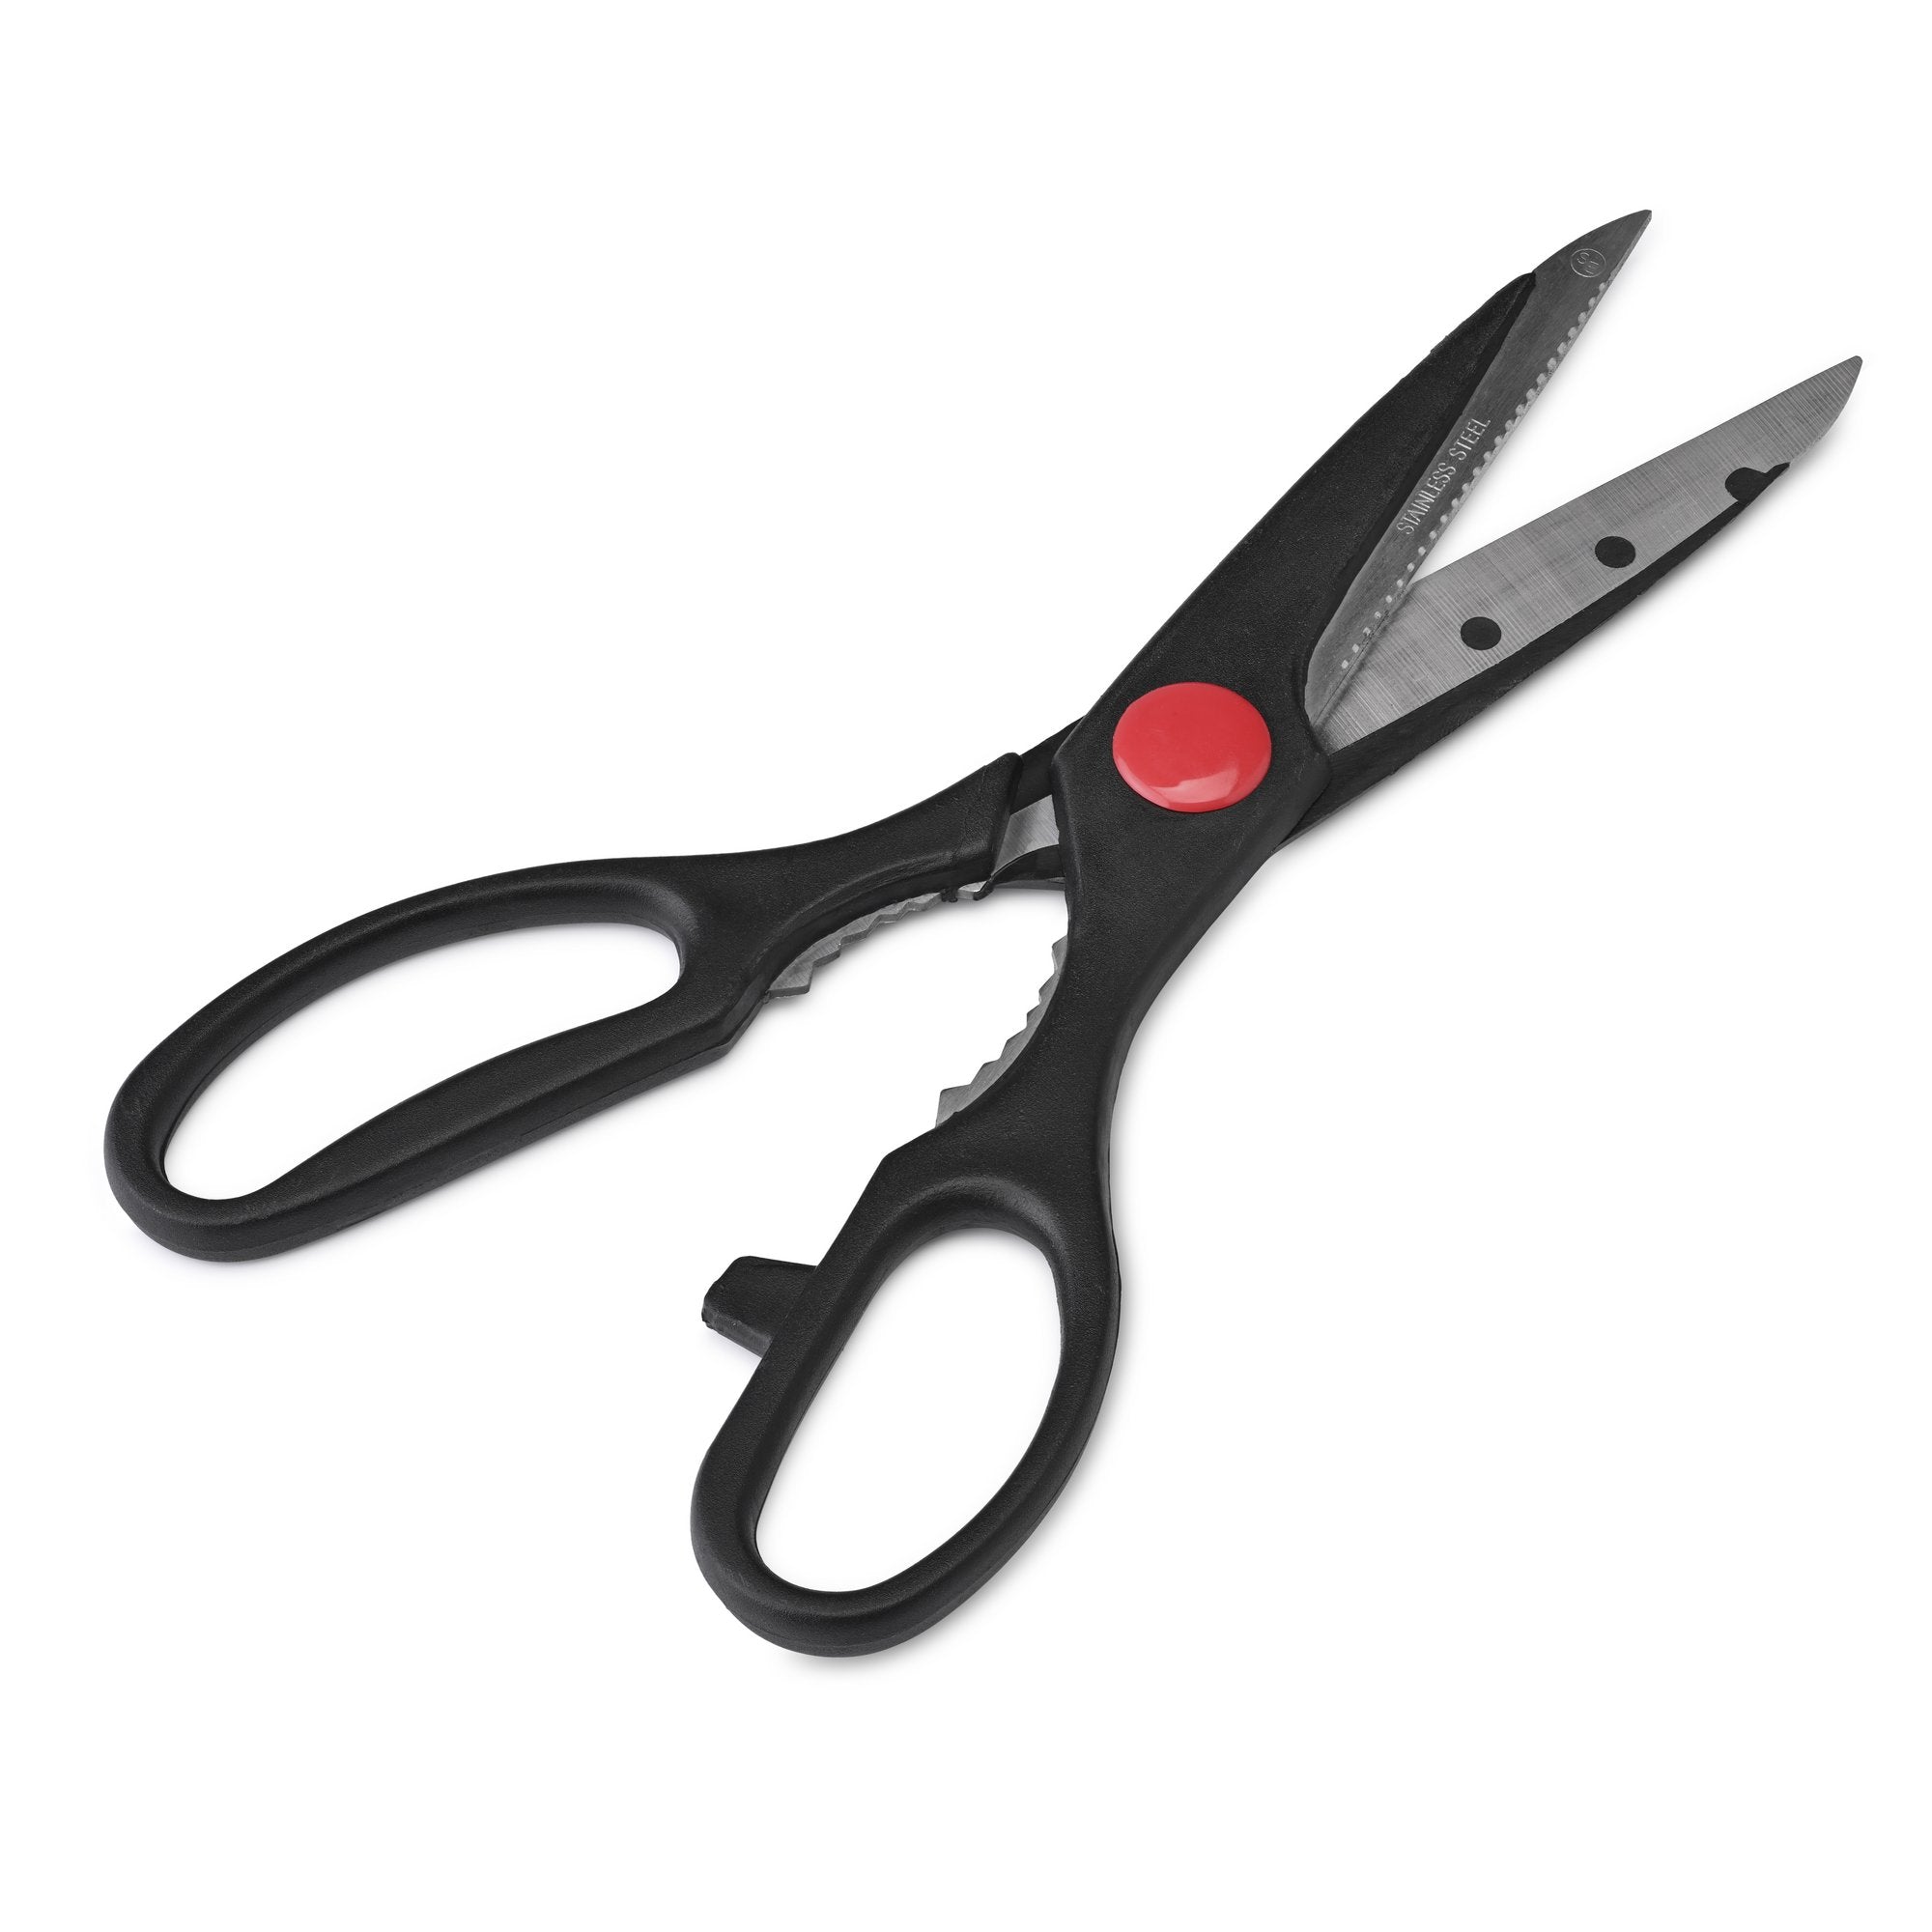 Utility Scissors New Economy